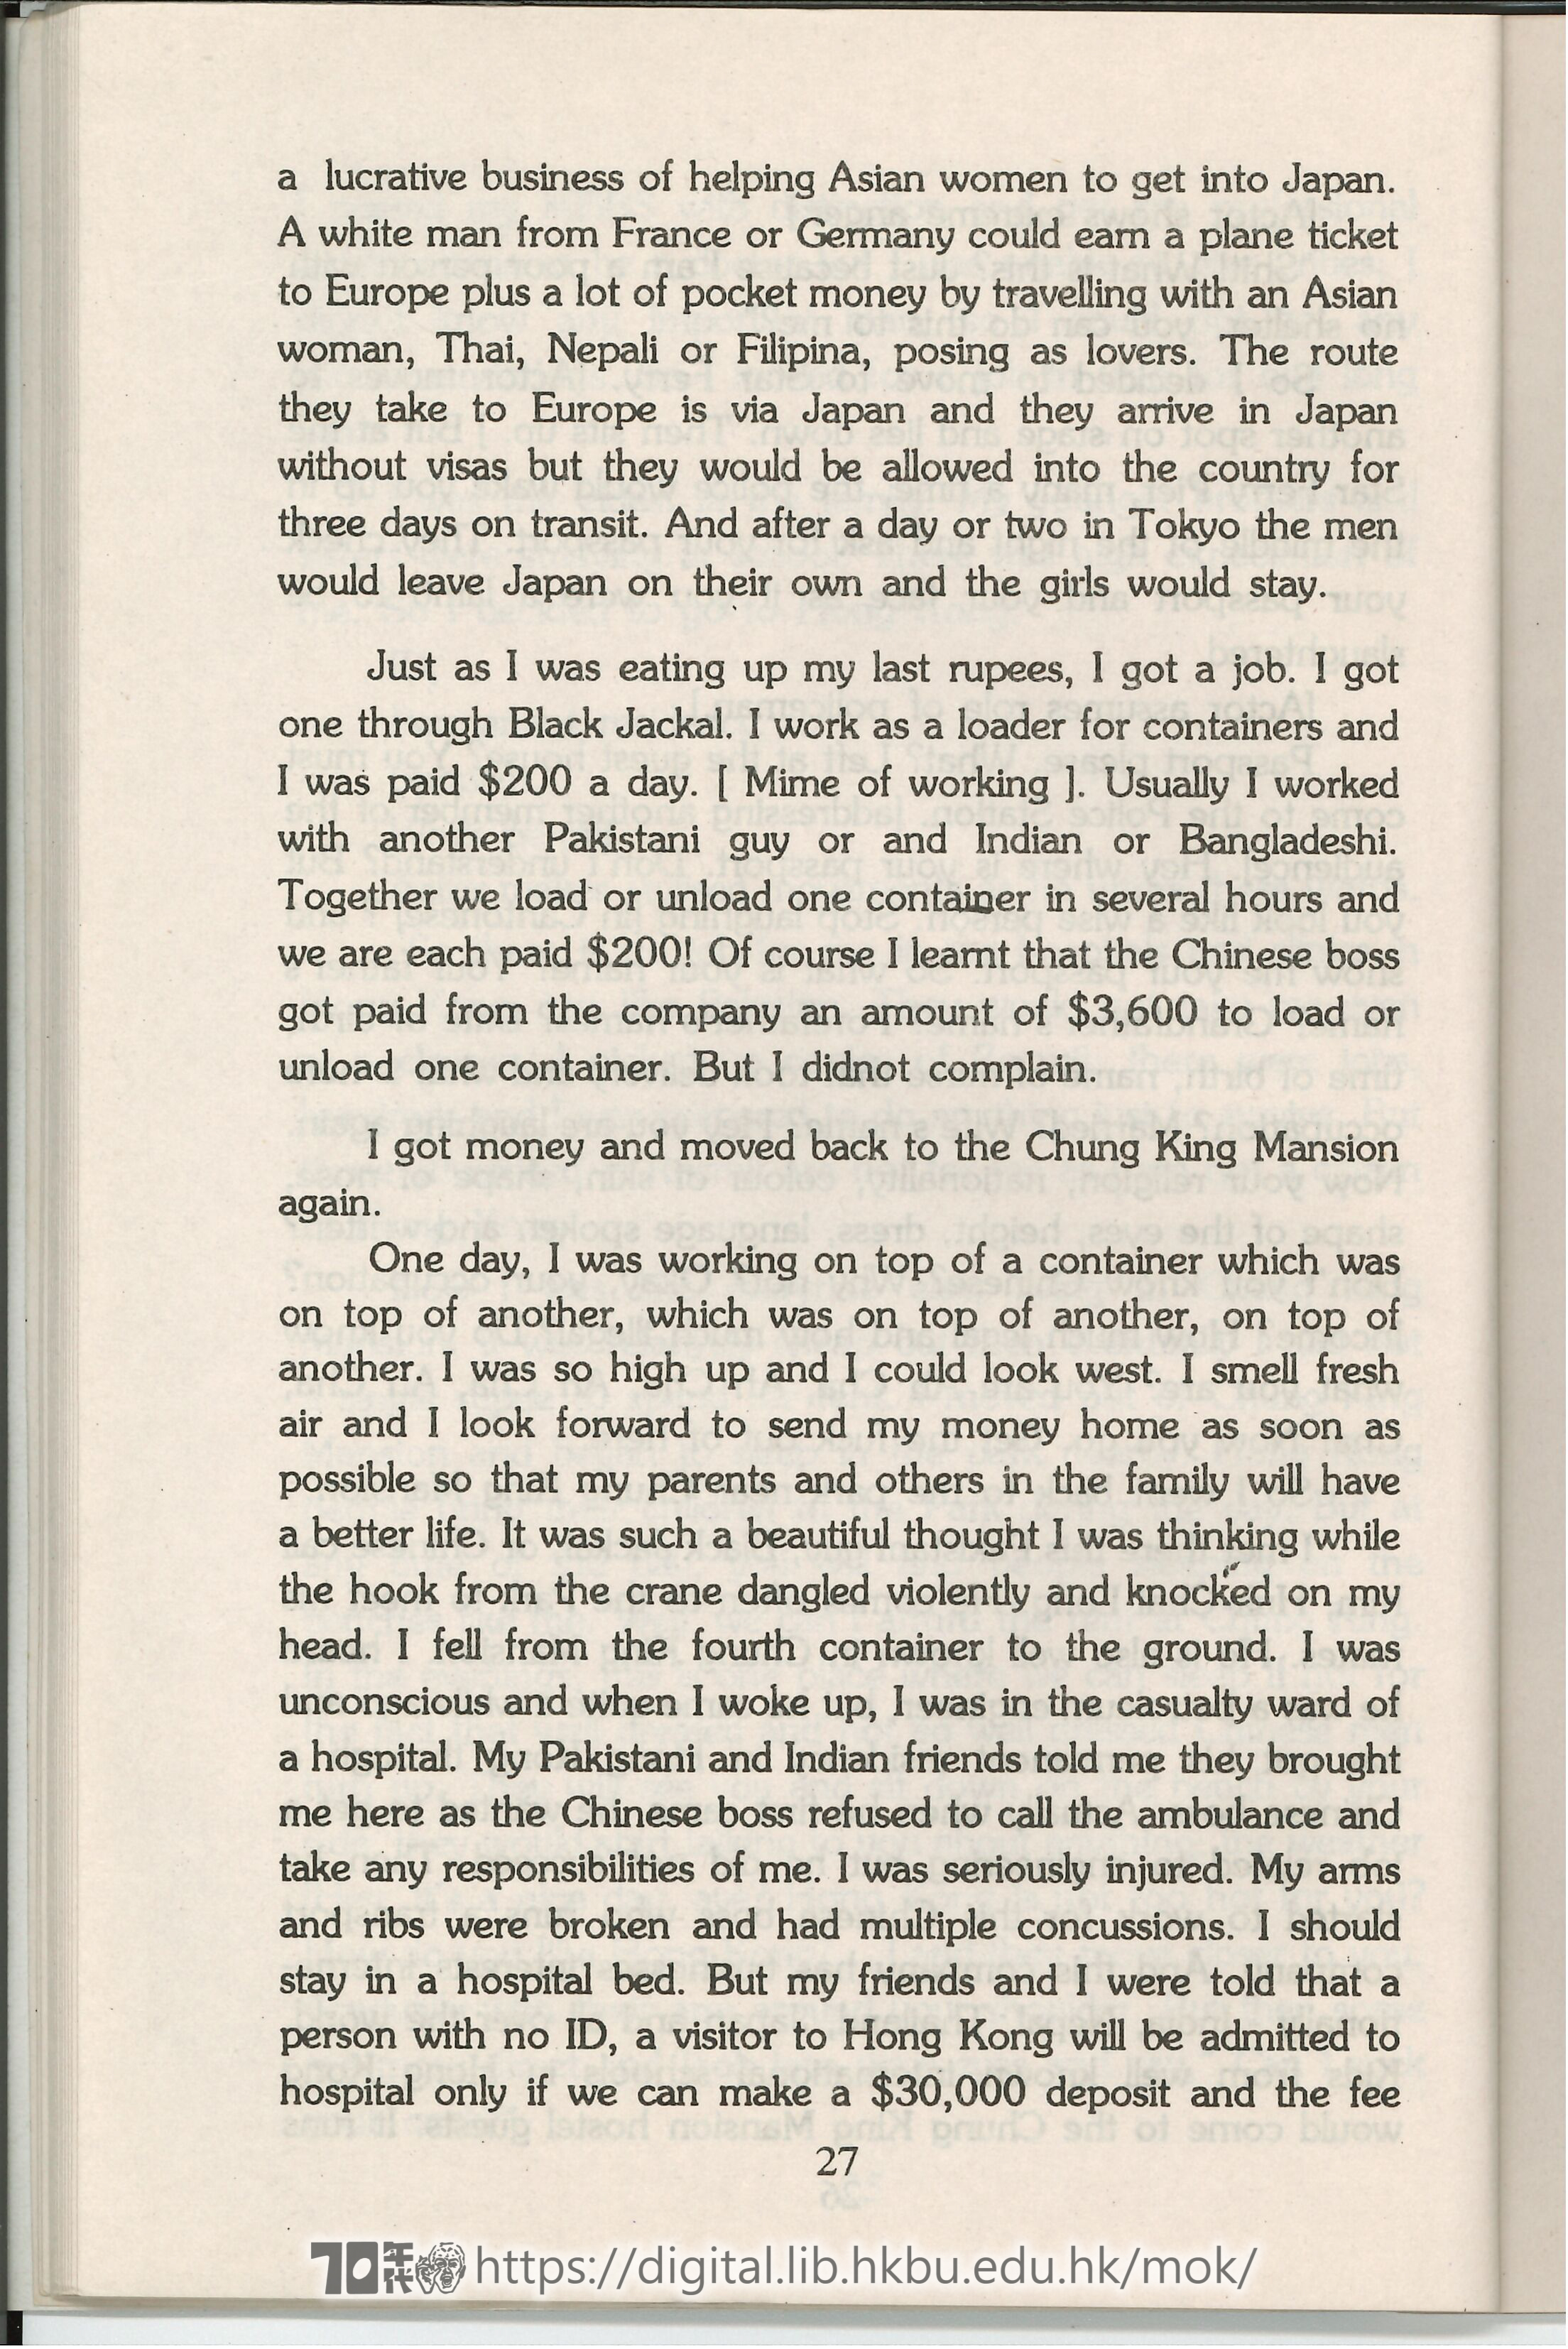 Hairy Monkeys at Chungking Mansion  Black Sky: Plays of South Asian Hongkong Encounter (Hairy Monkeys in Chung King Mansion, Black Sky, 1984/1997) MOK, Chiu Yu, Afzal, Mohamod, MALLA, Ashesh, HEERA, Manman 